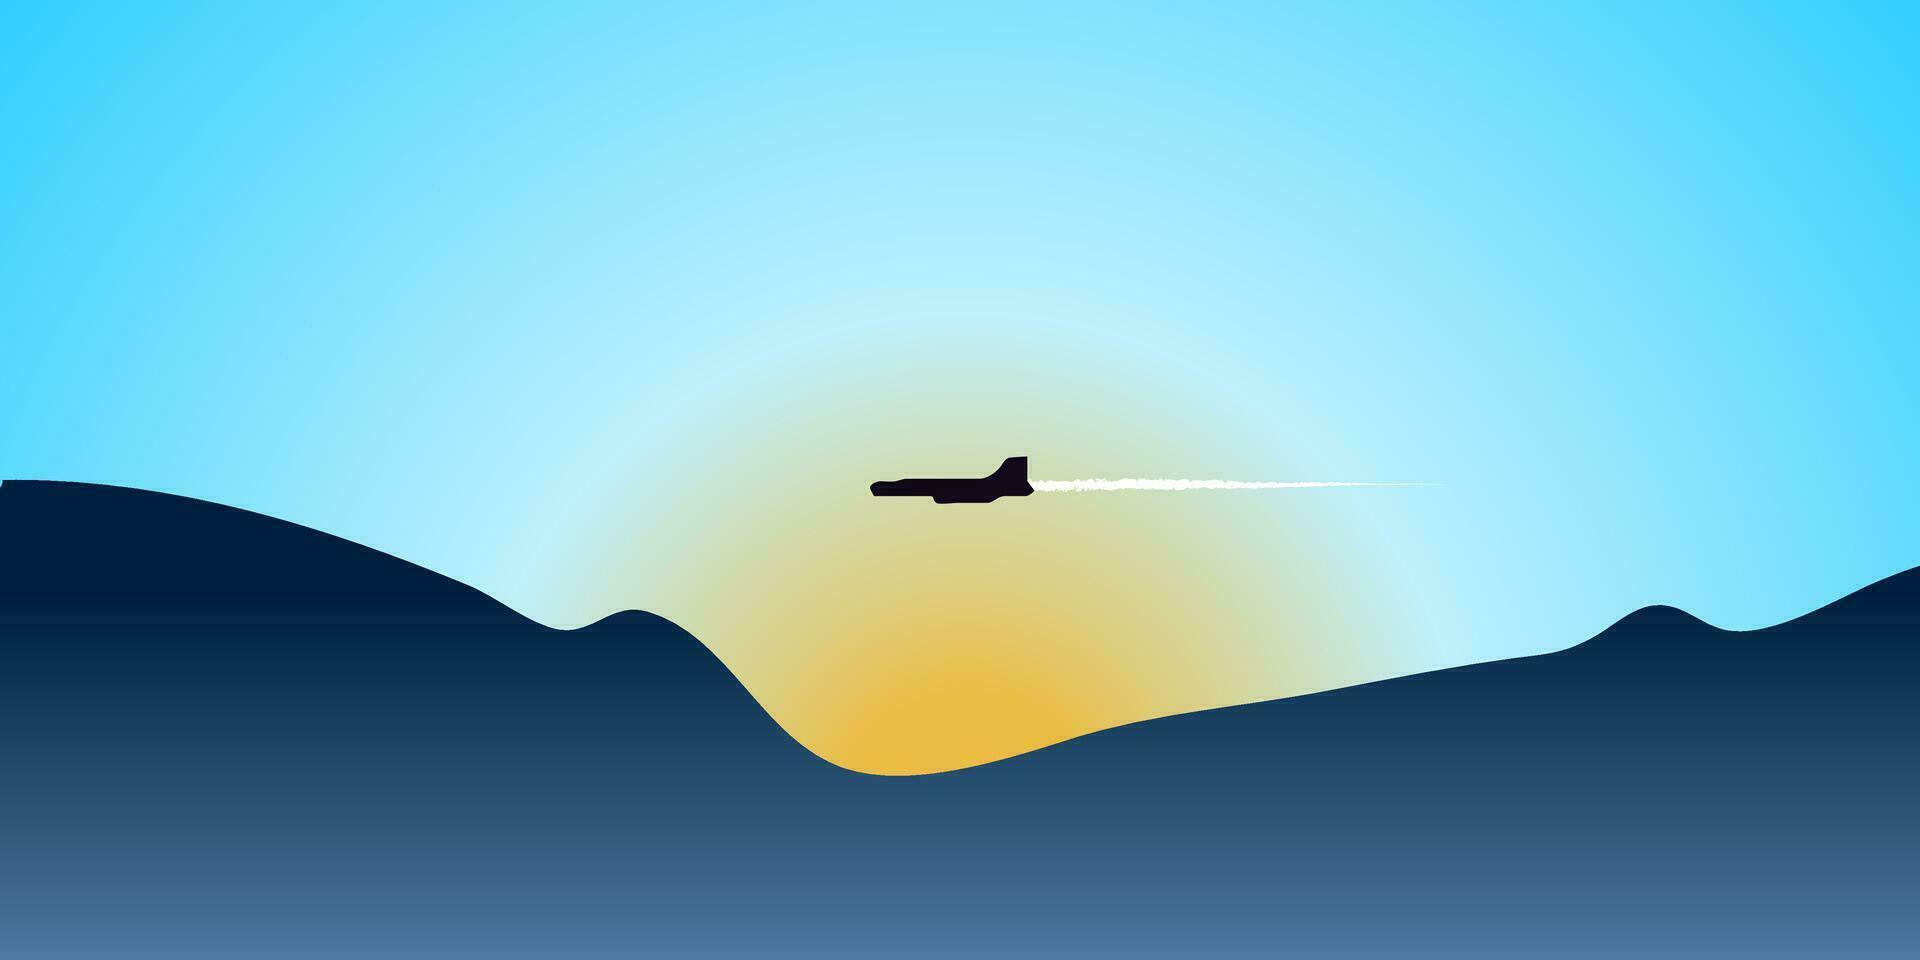 silueta de avión o chorro volador en el cielo. vector ilustración.